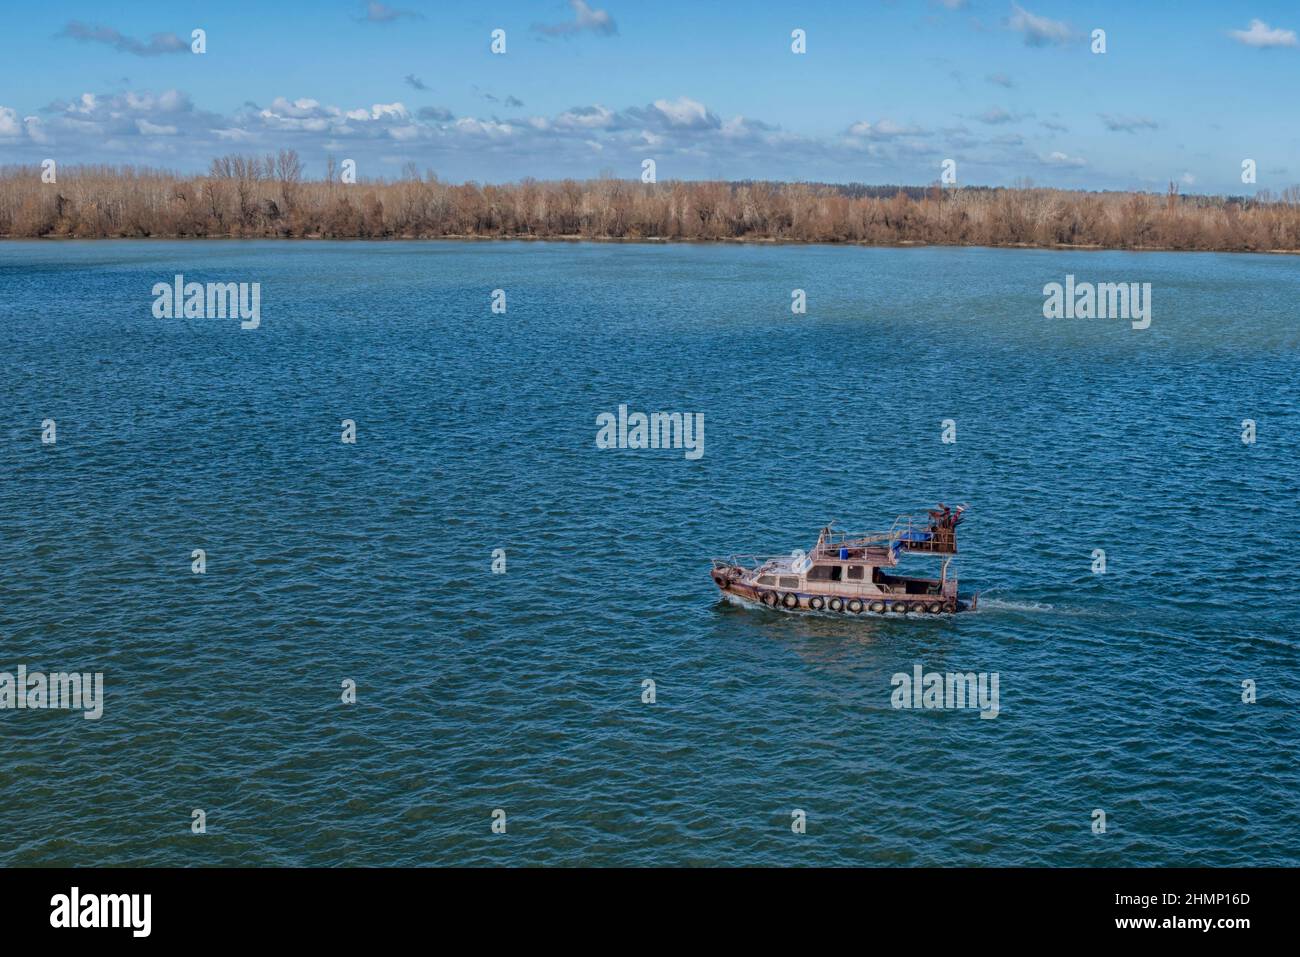 Fishing Boat on Danube River near Smederevo, Serbia Stock Photo